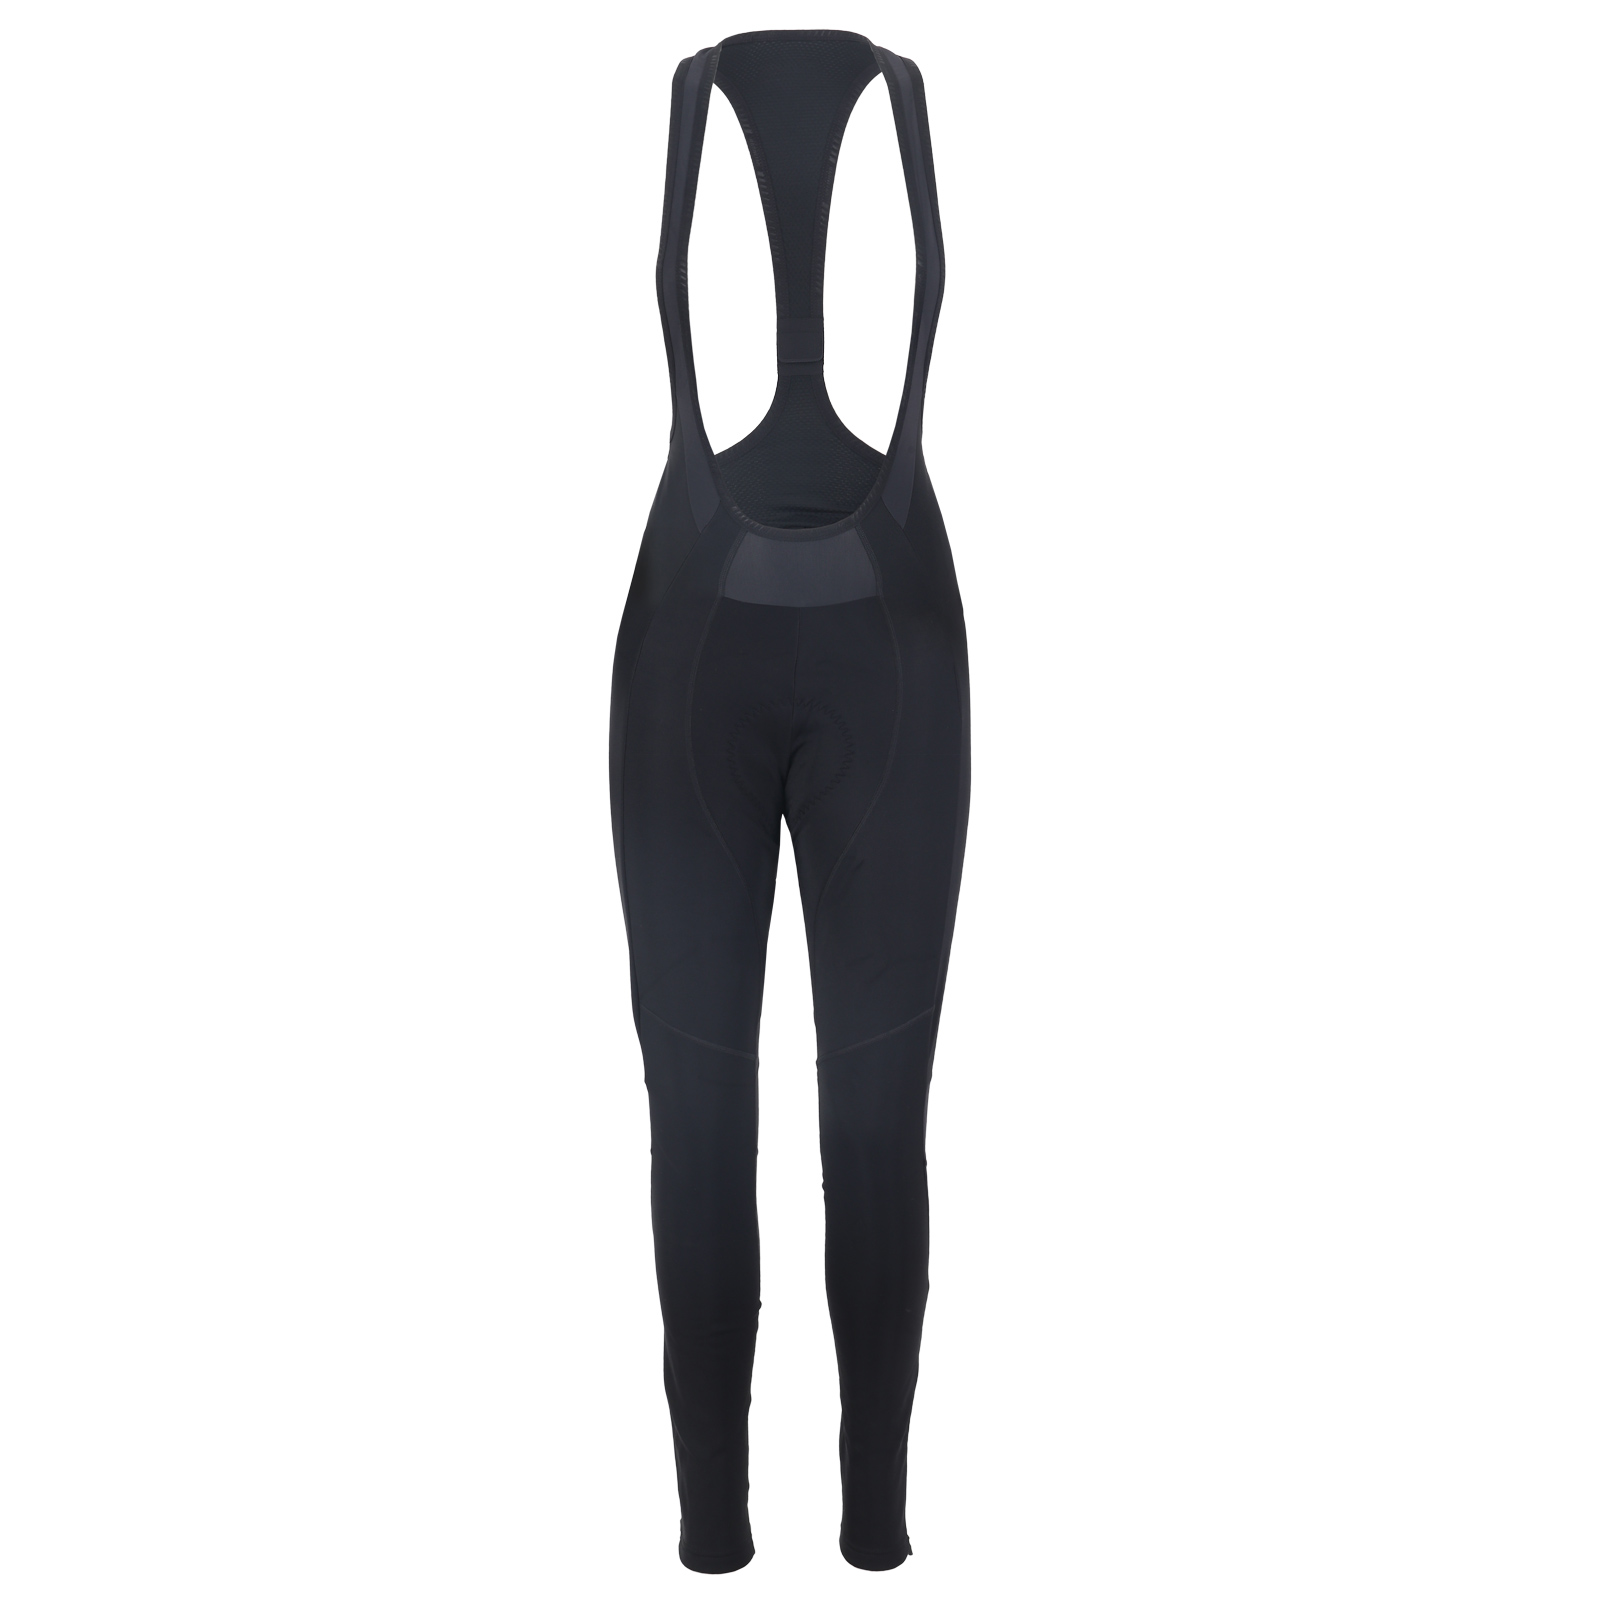 Produktbild von Specialized SL Expert Softshell Trägerhose Damen - schwarz